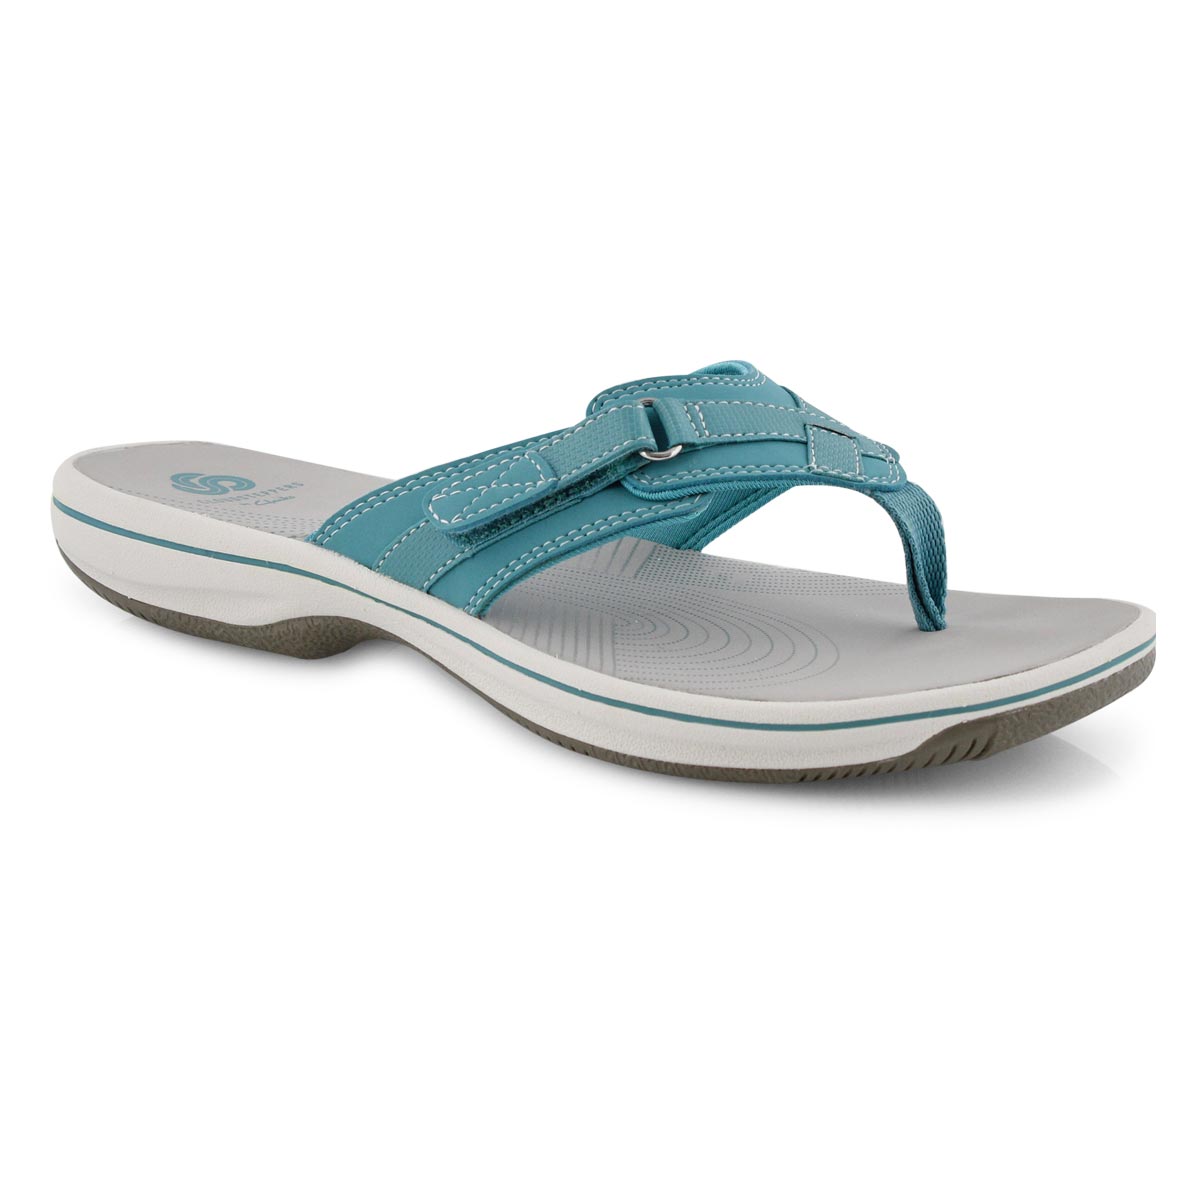 clarks aqua sandals